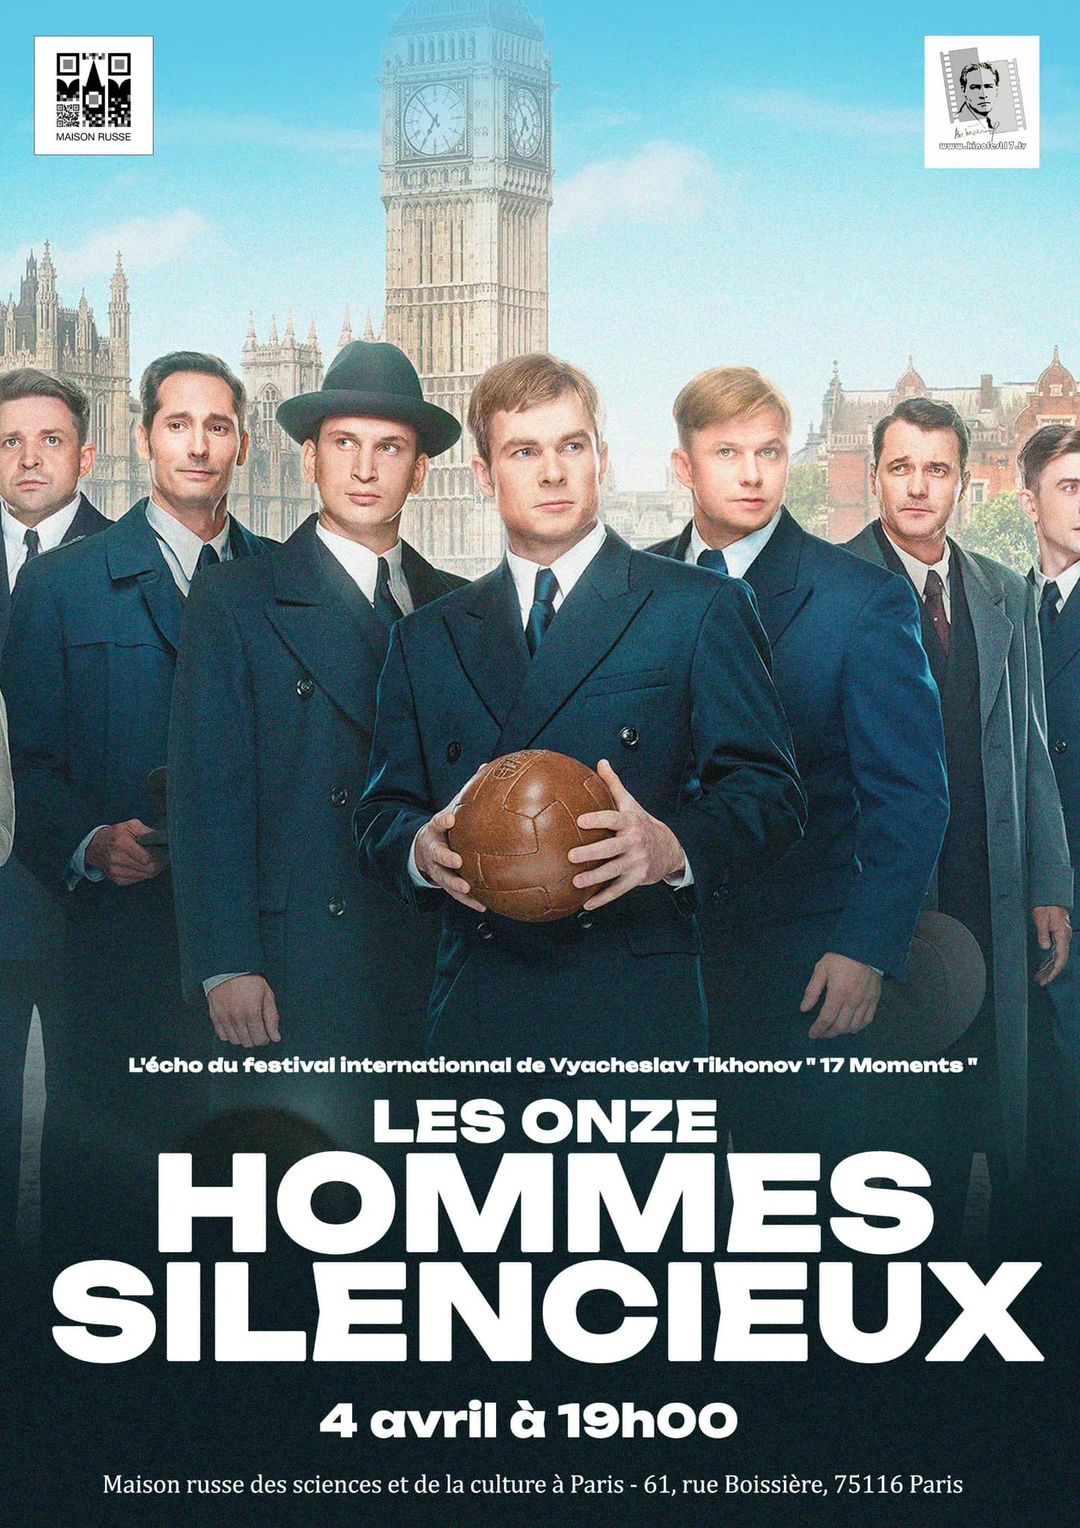 Премьера фильма «11 молчаливых мужчин» с французскими субтитрами